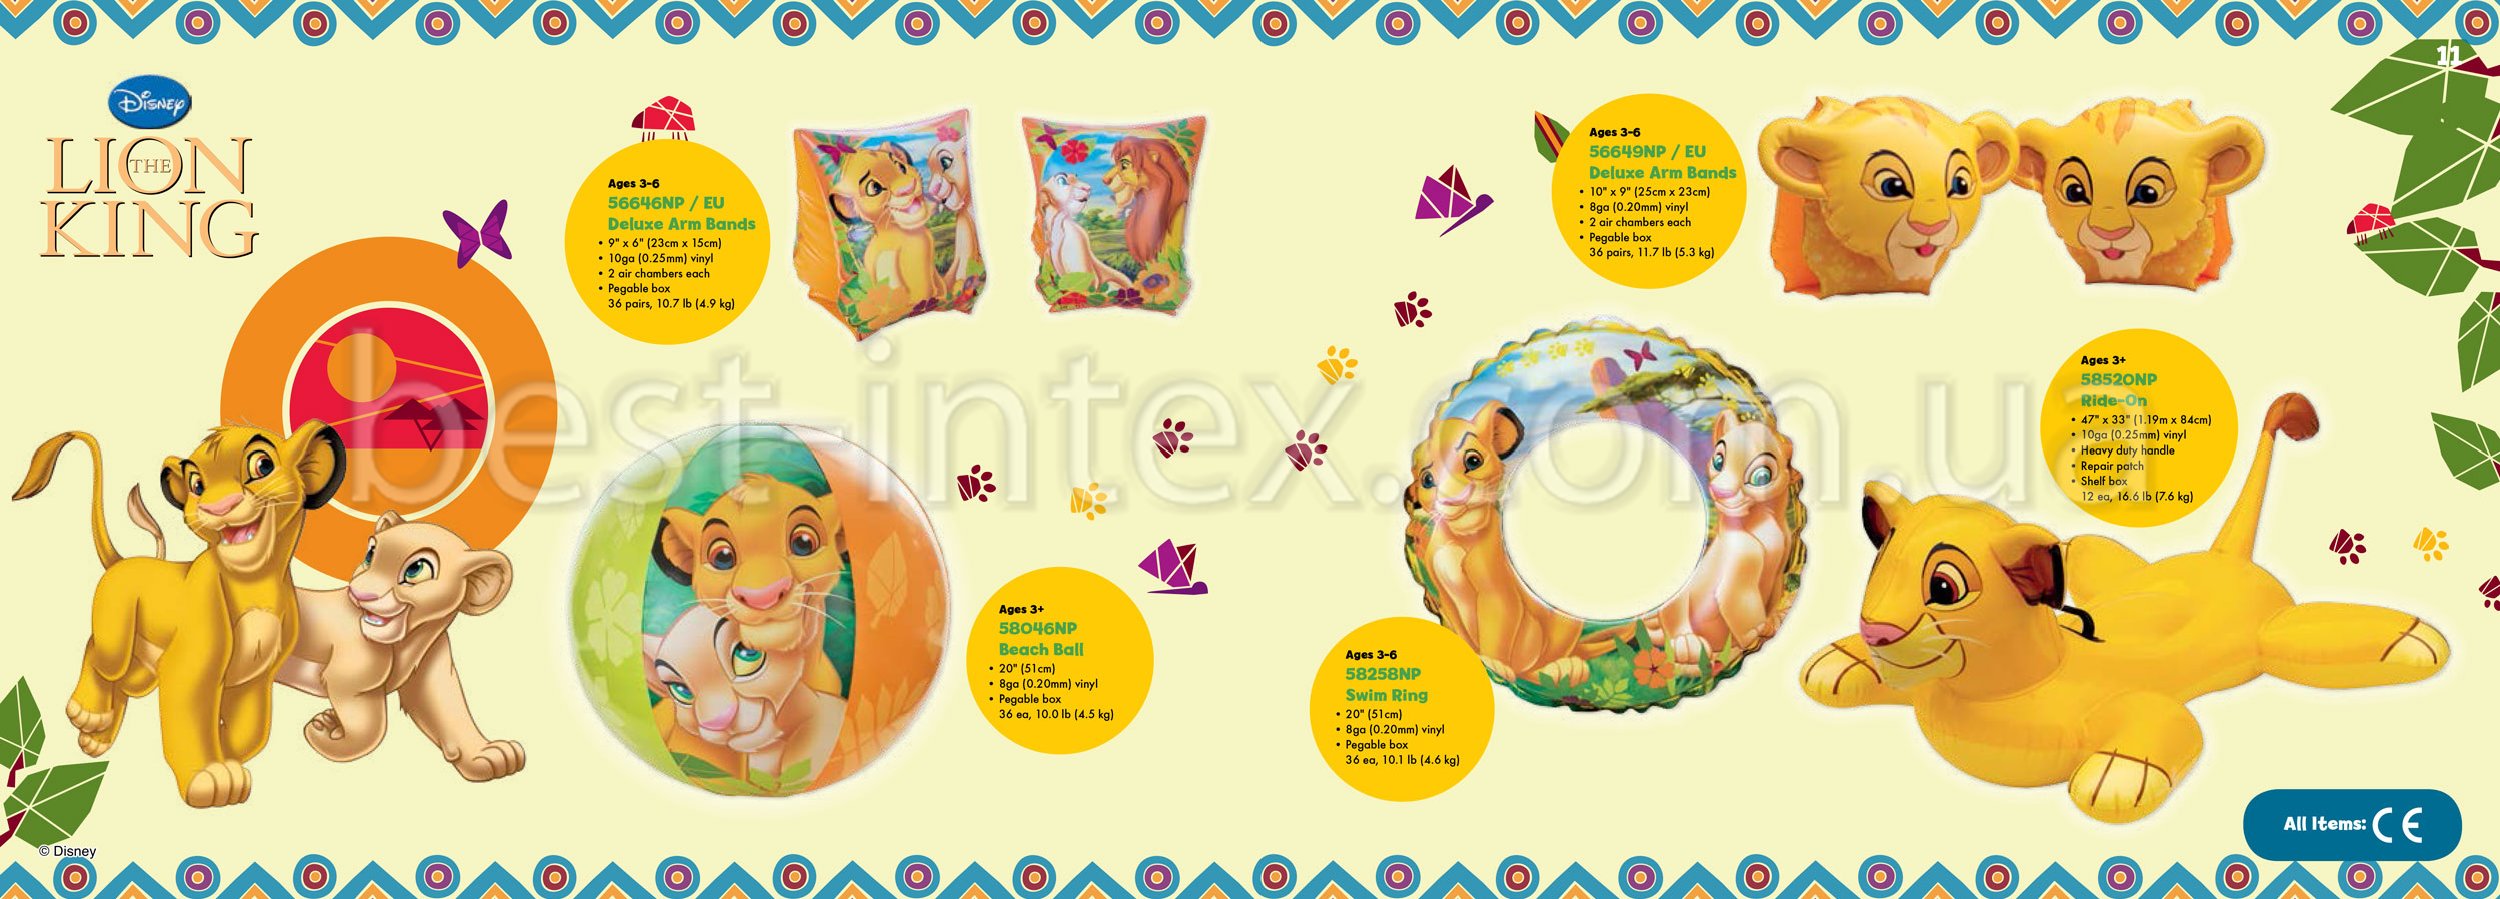 Серия надувных изделий Intex Disney The Lion King Надувные изделия Интекс Король Лев